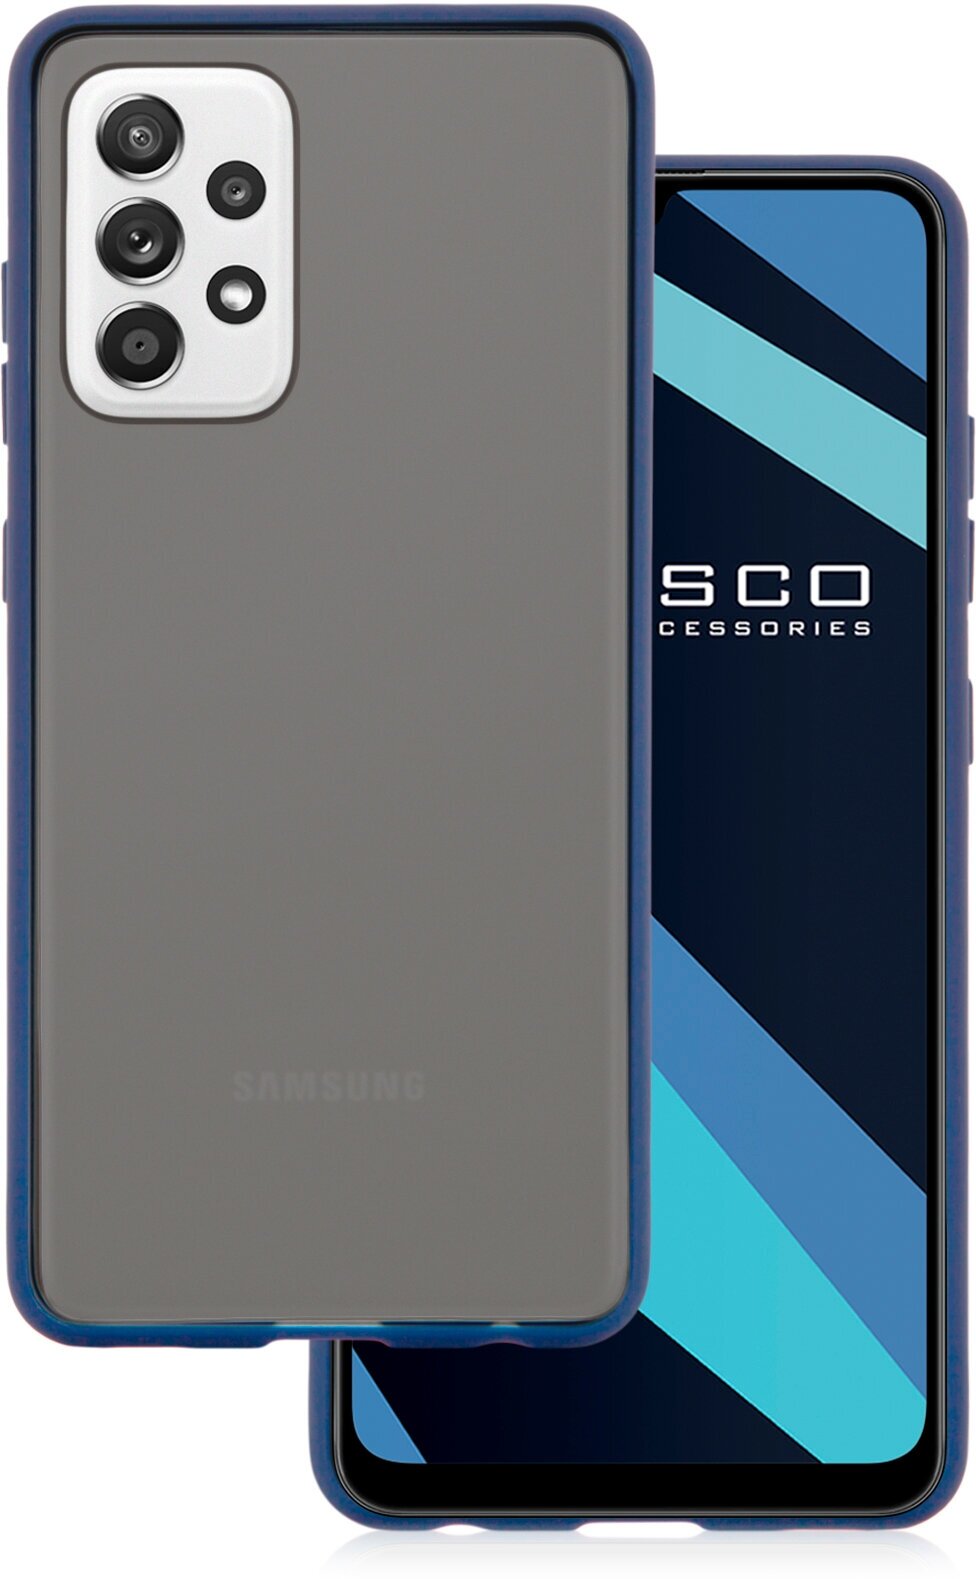 Противоударный чехол ROSCO на Samsung Galaxy A52 (Самсунг Галакси А52) с удобными цветными кнопками гибкая окантовка полупрозрачный матовый синий